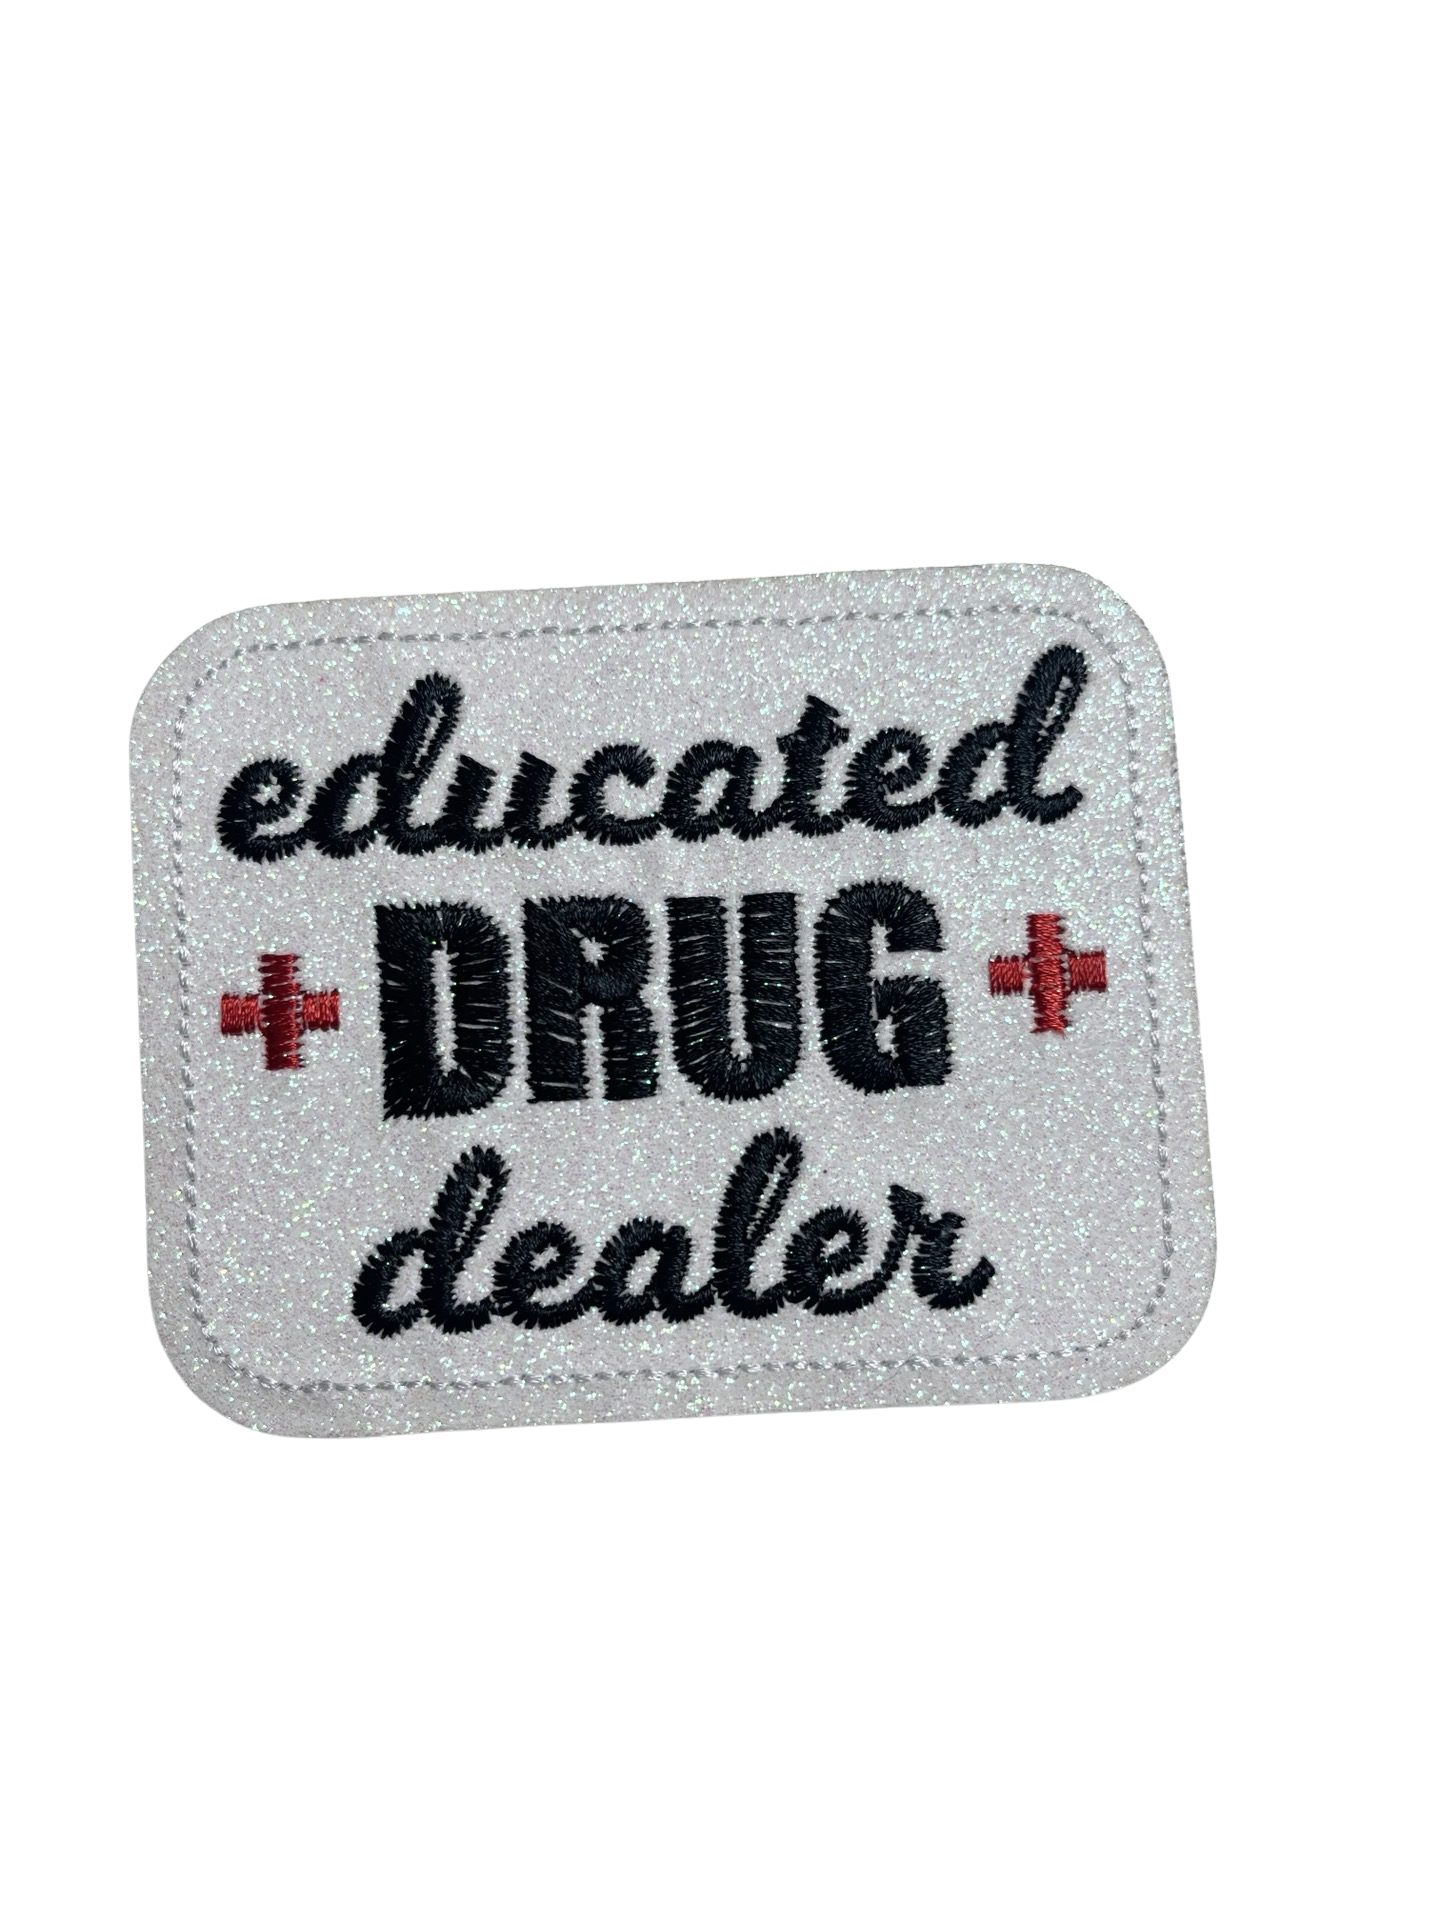 P-33 Educated Drug Dealer